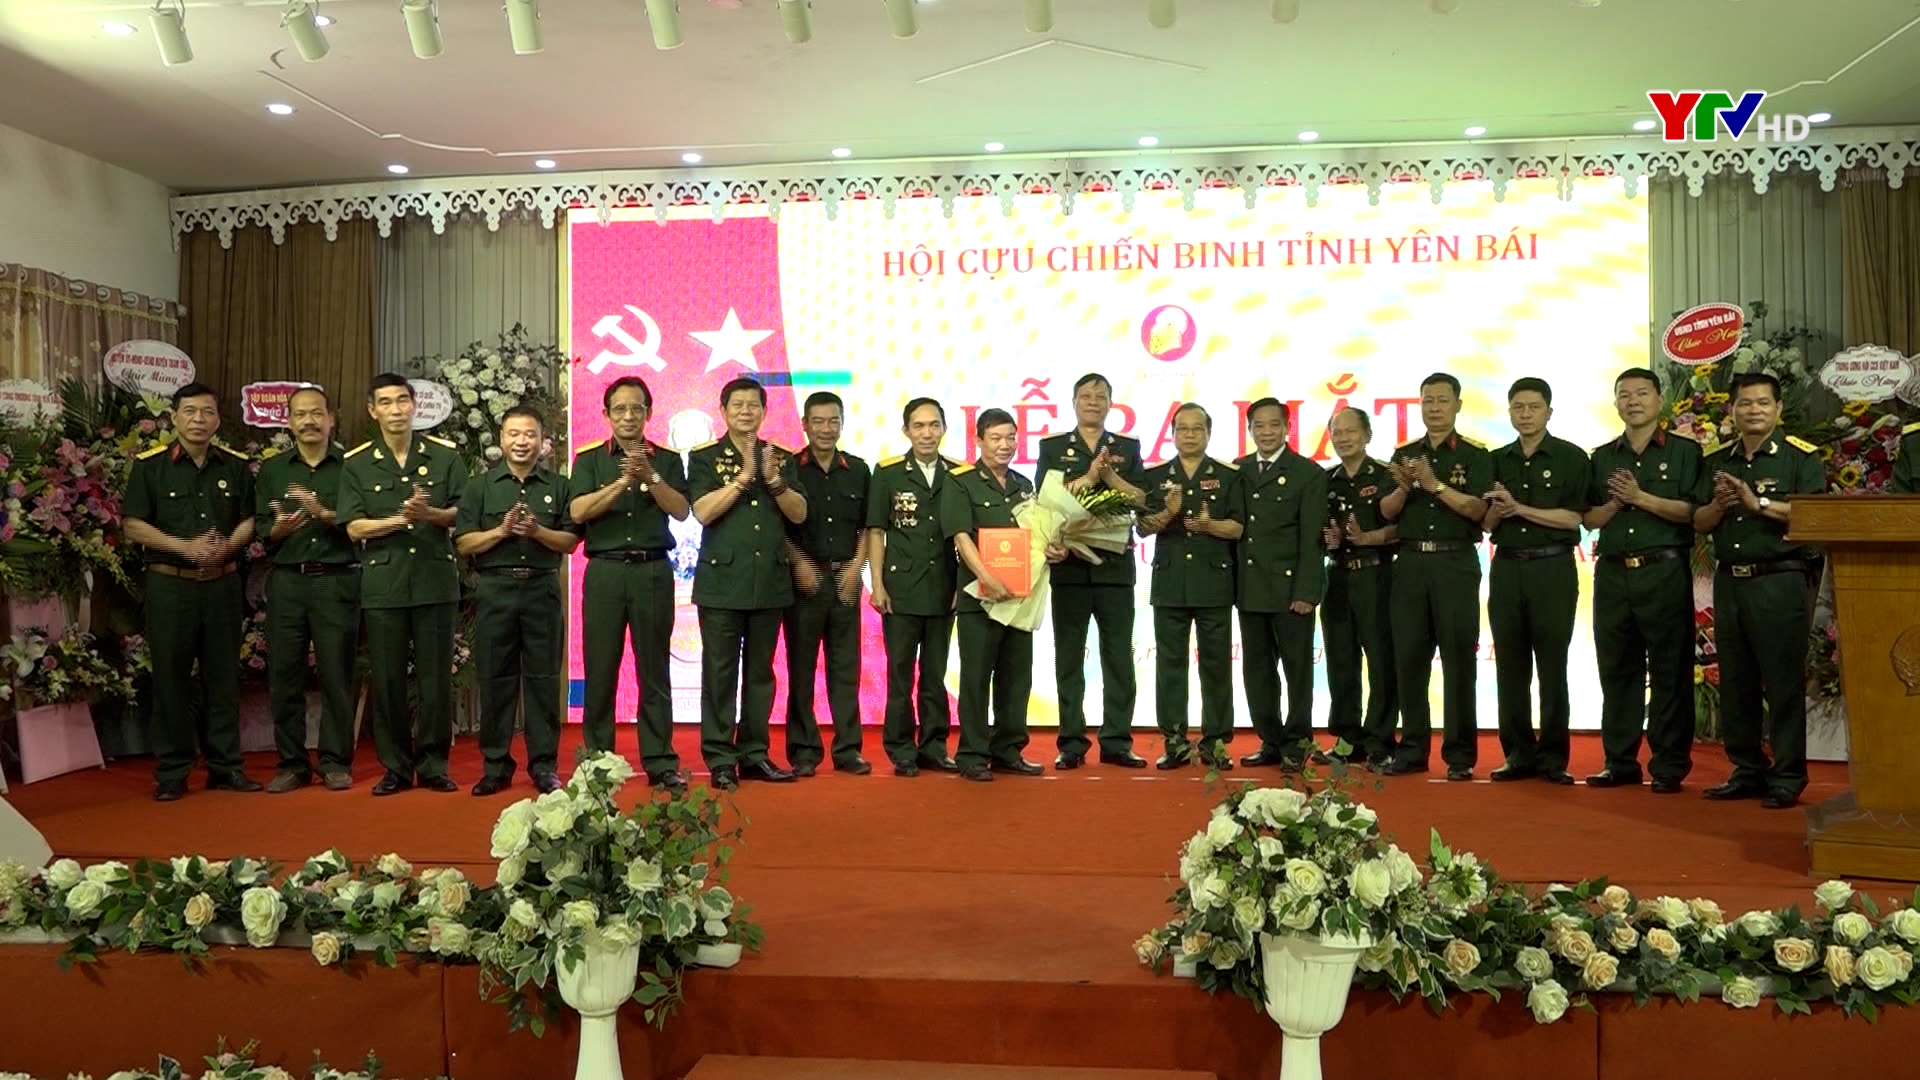 Ra mắt CLB Doanh nhân cựu chiến binh tỉnh Yên Bái